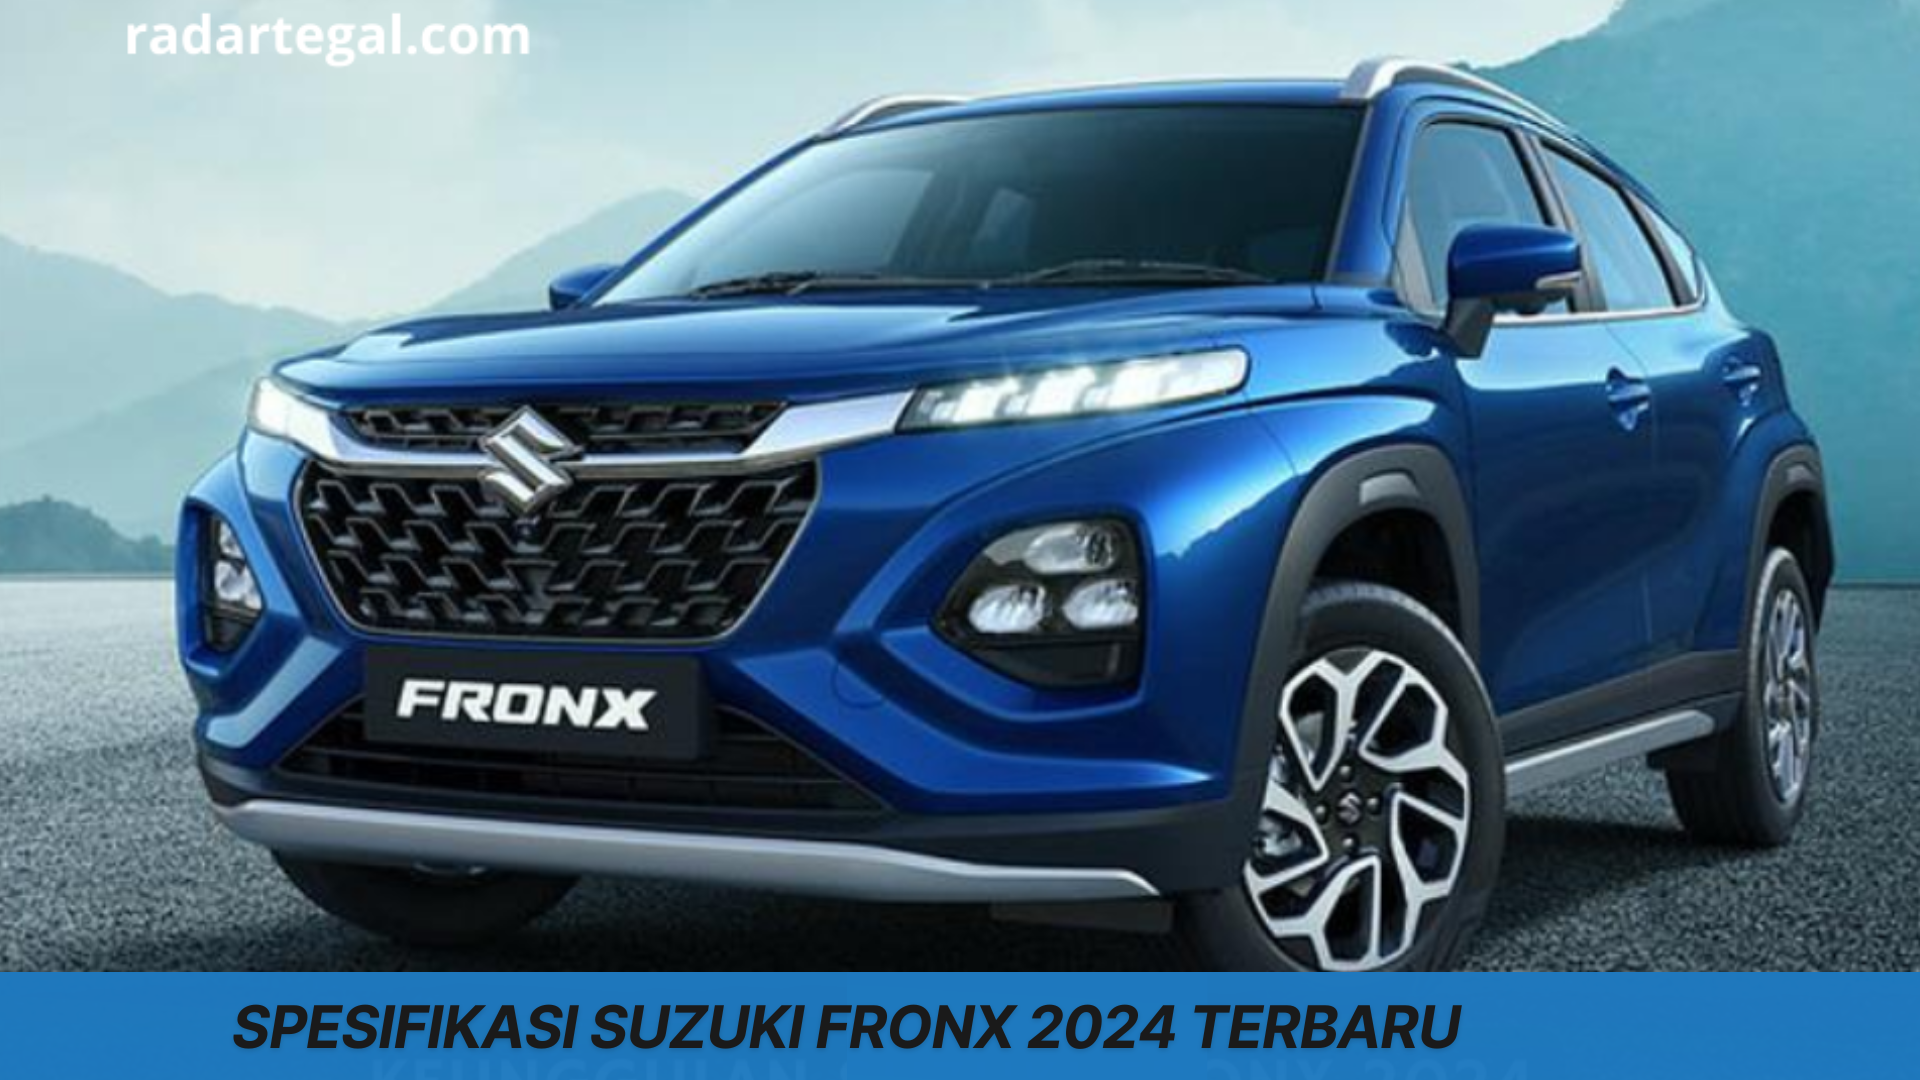 Harga Rp100 Jutaan, Ini Spesifikasi Suzuki Fronx 2024 Terbaru, Small SUV dengan Inovasi Desain yang Canggih